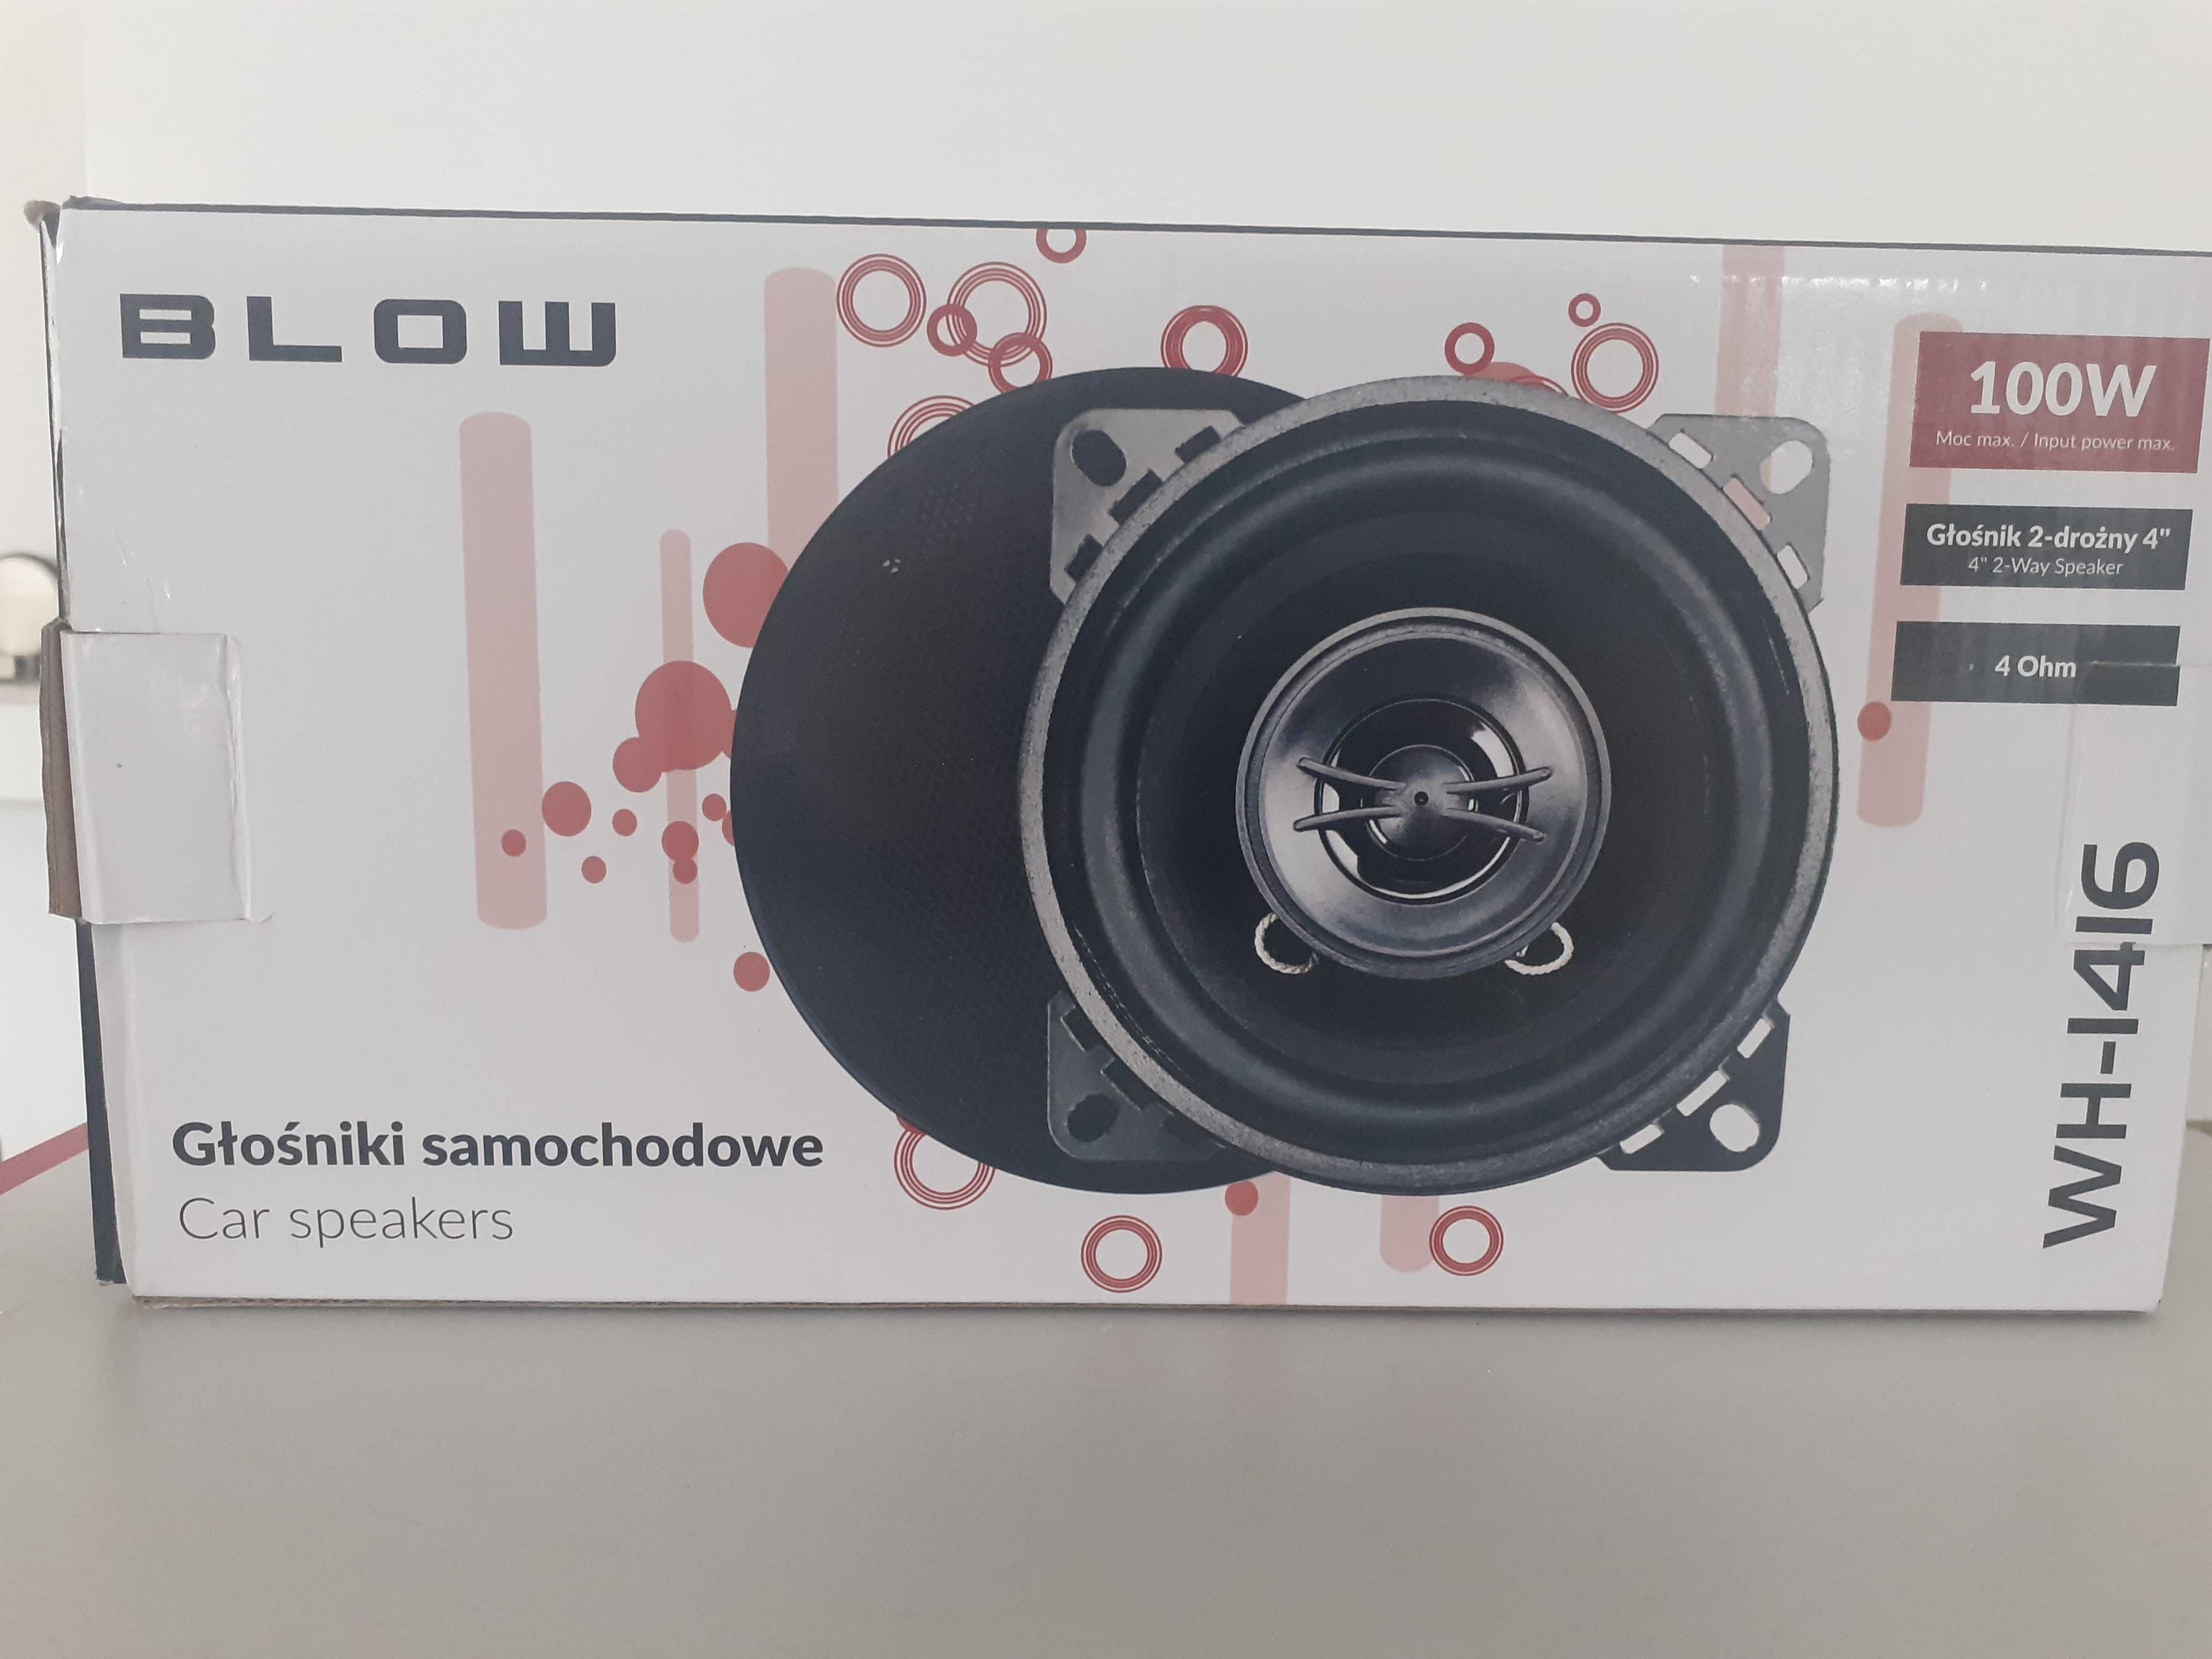 NOWY Głośnik dwudrożny BLOW WH-1416 - 100W 4" 4Ohm.